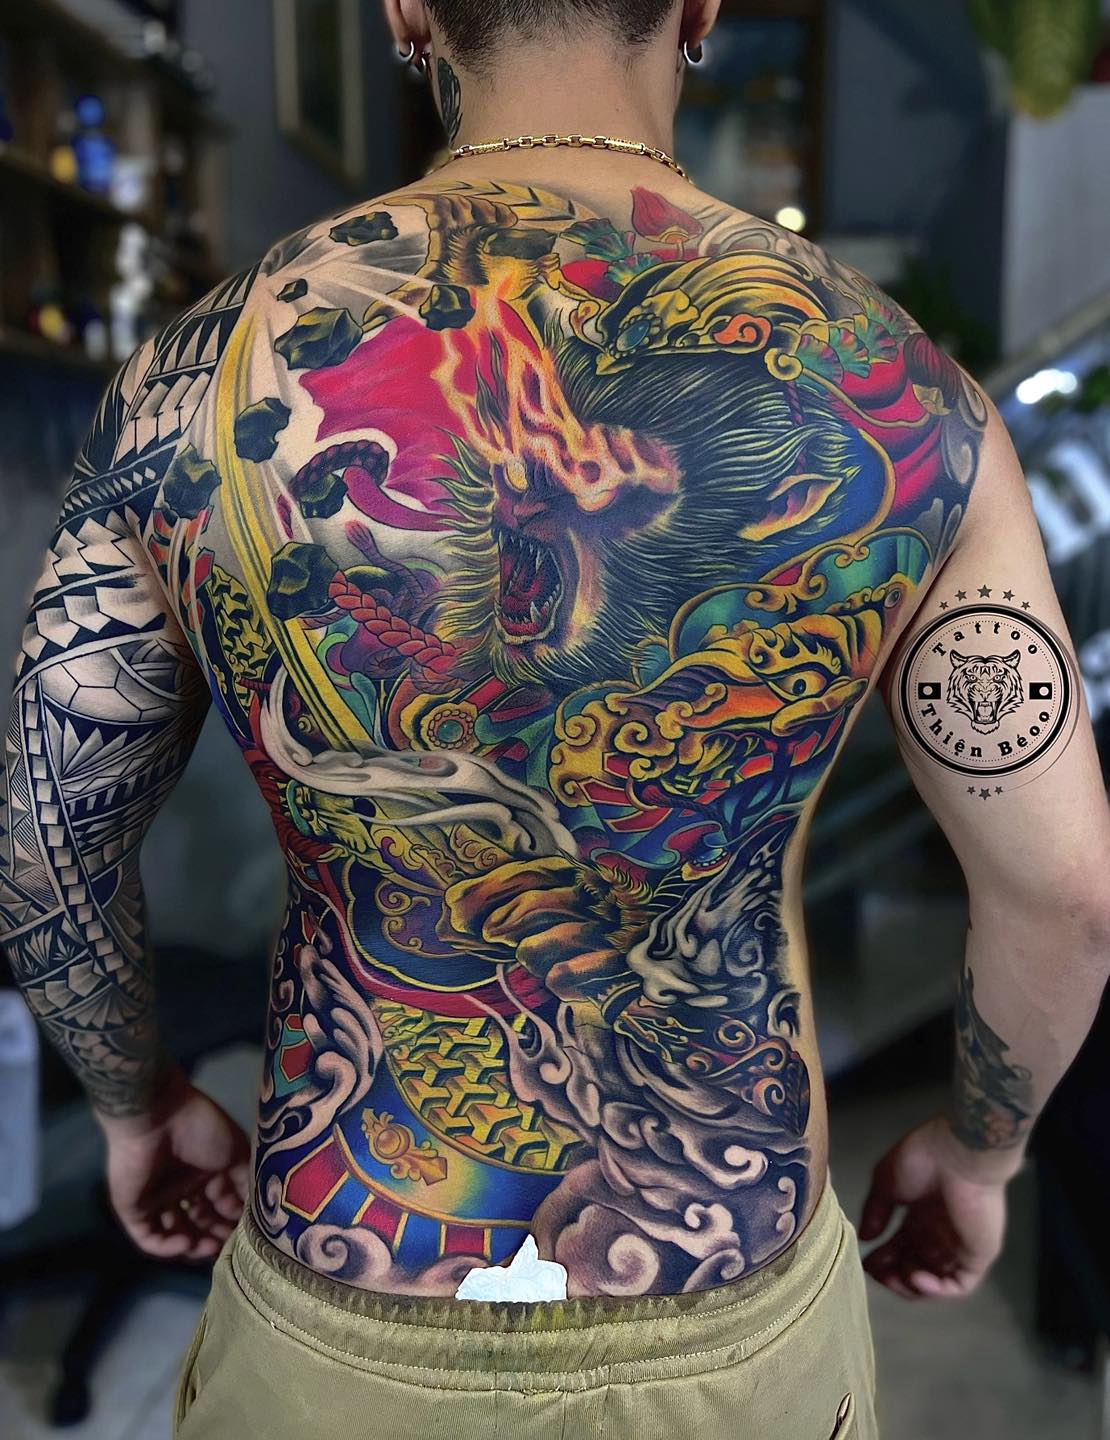 Hinh xam cha me full lưng Trần giàu tattoo  By Xăm nghệ thuật Phan  ThiếtTrần Giàu Tattoo  Facebook